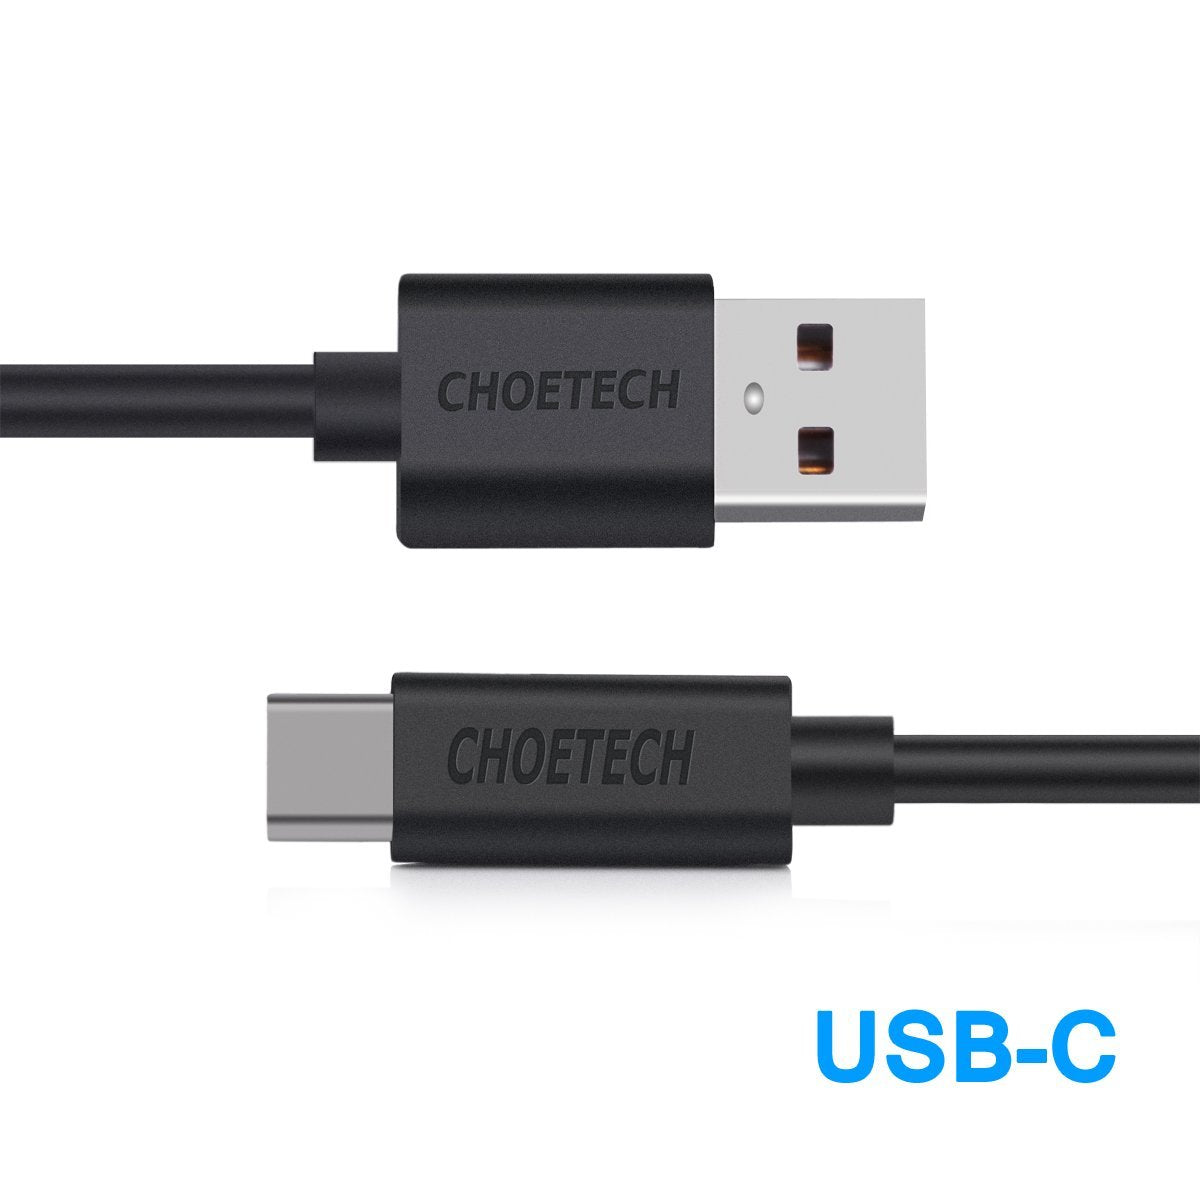 AC0004 CHOETECH USB Typ C Kabel [3 m] USB C auf USB A 2.0 Schnelllade- und Datensynchronisierungskabel Kompatibel mit Samsung Galaxy S10 S9 S8 S9 Plus, Nintendo Switch, LG G5 G6 V20 V30, HTC 10 U11